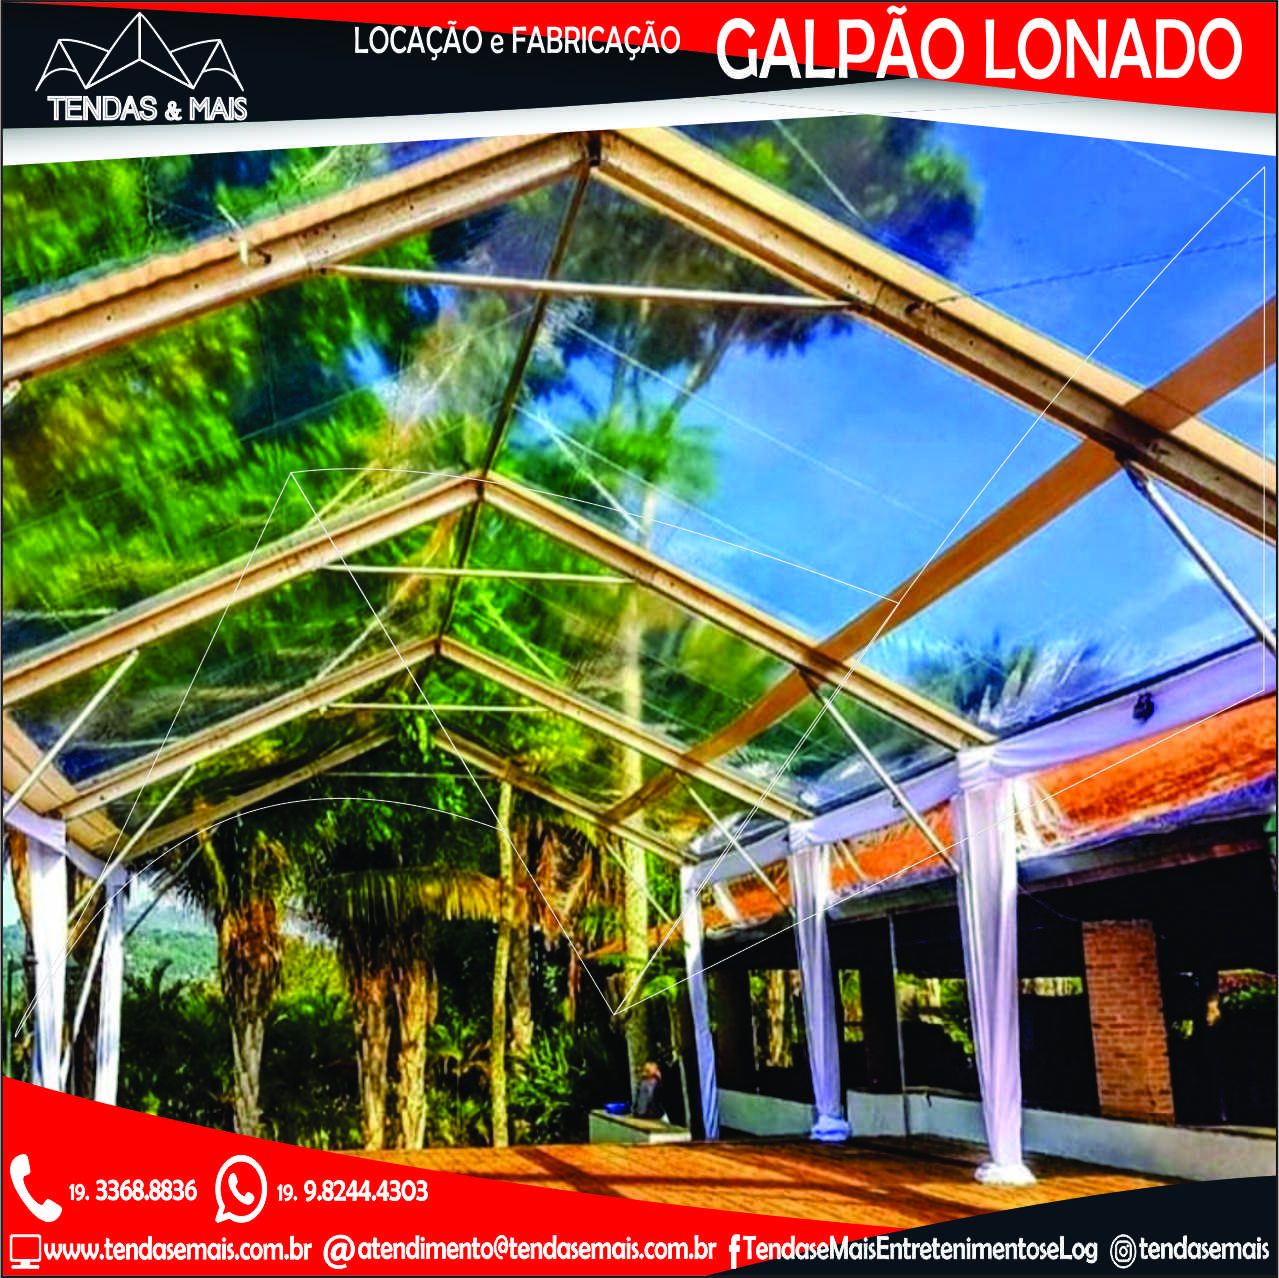 GALPÃO LONADO_INSTA 05